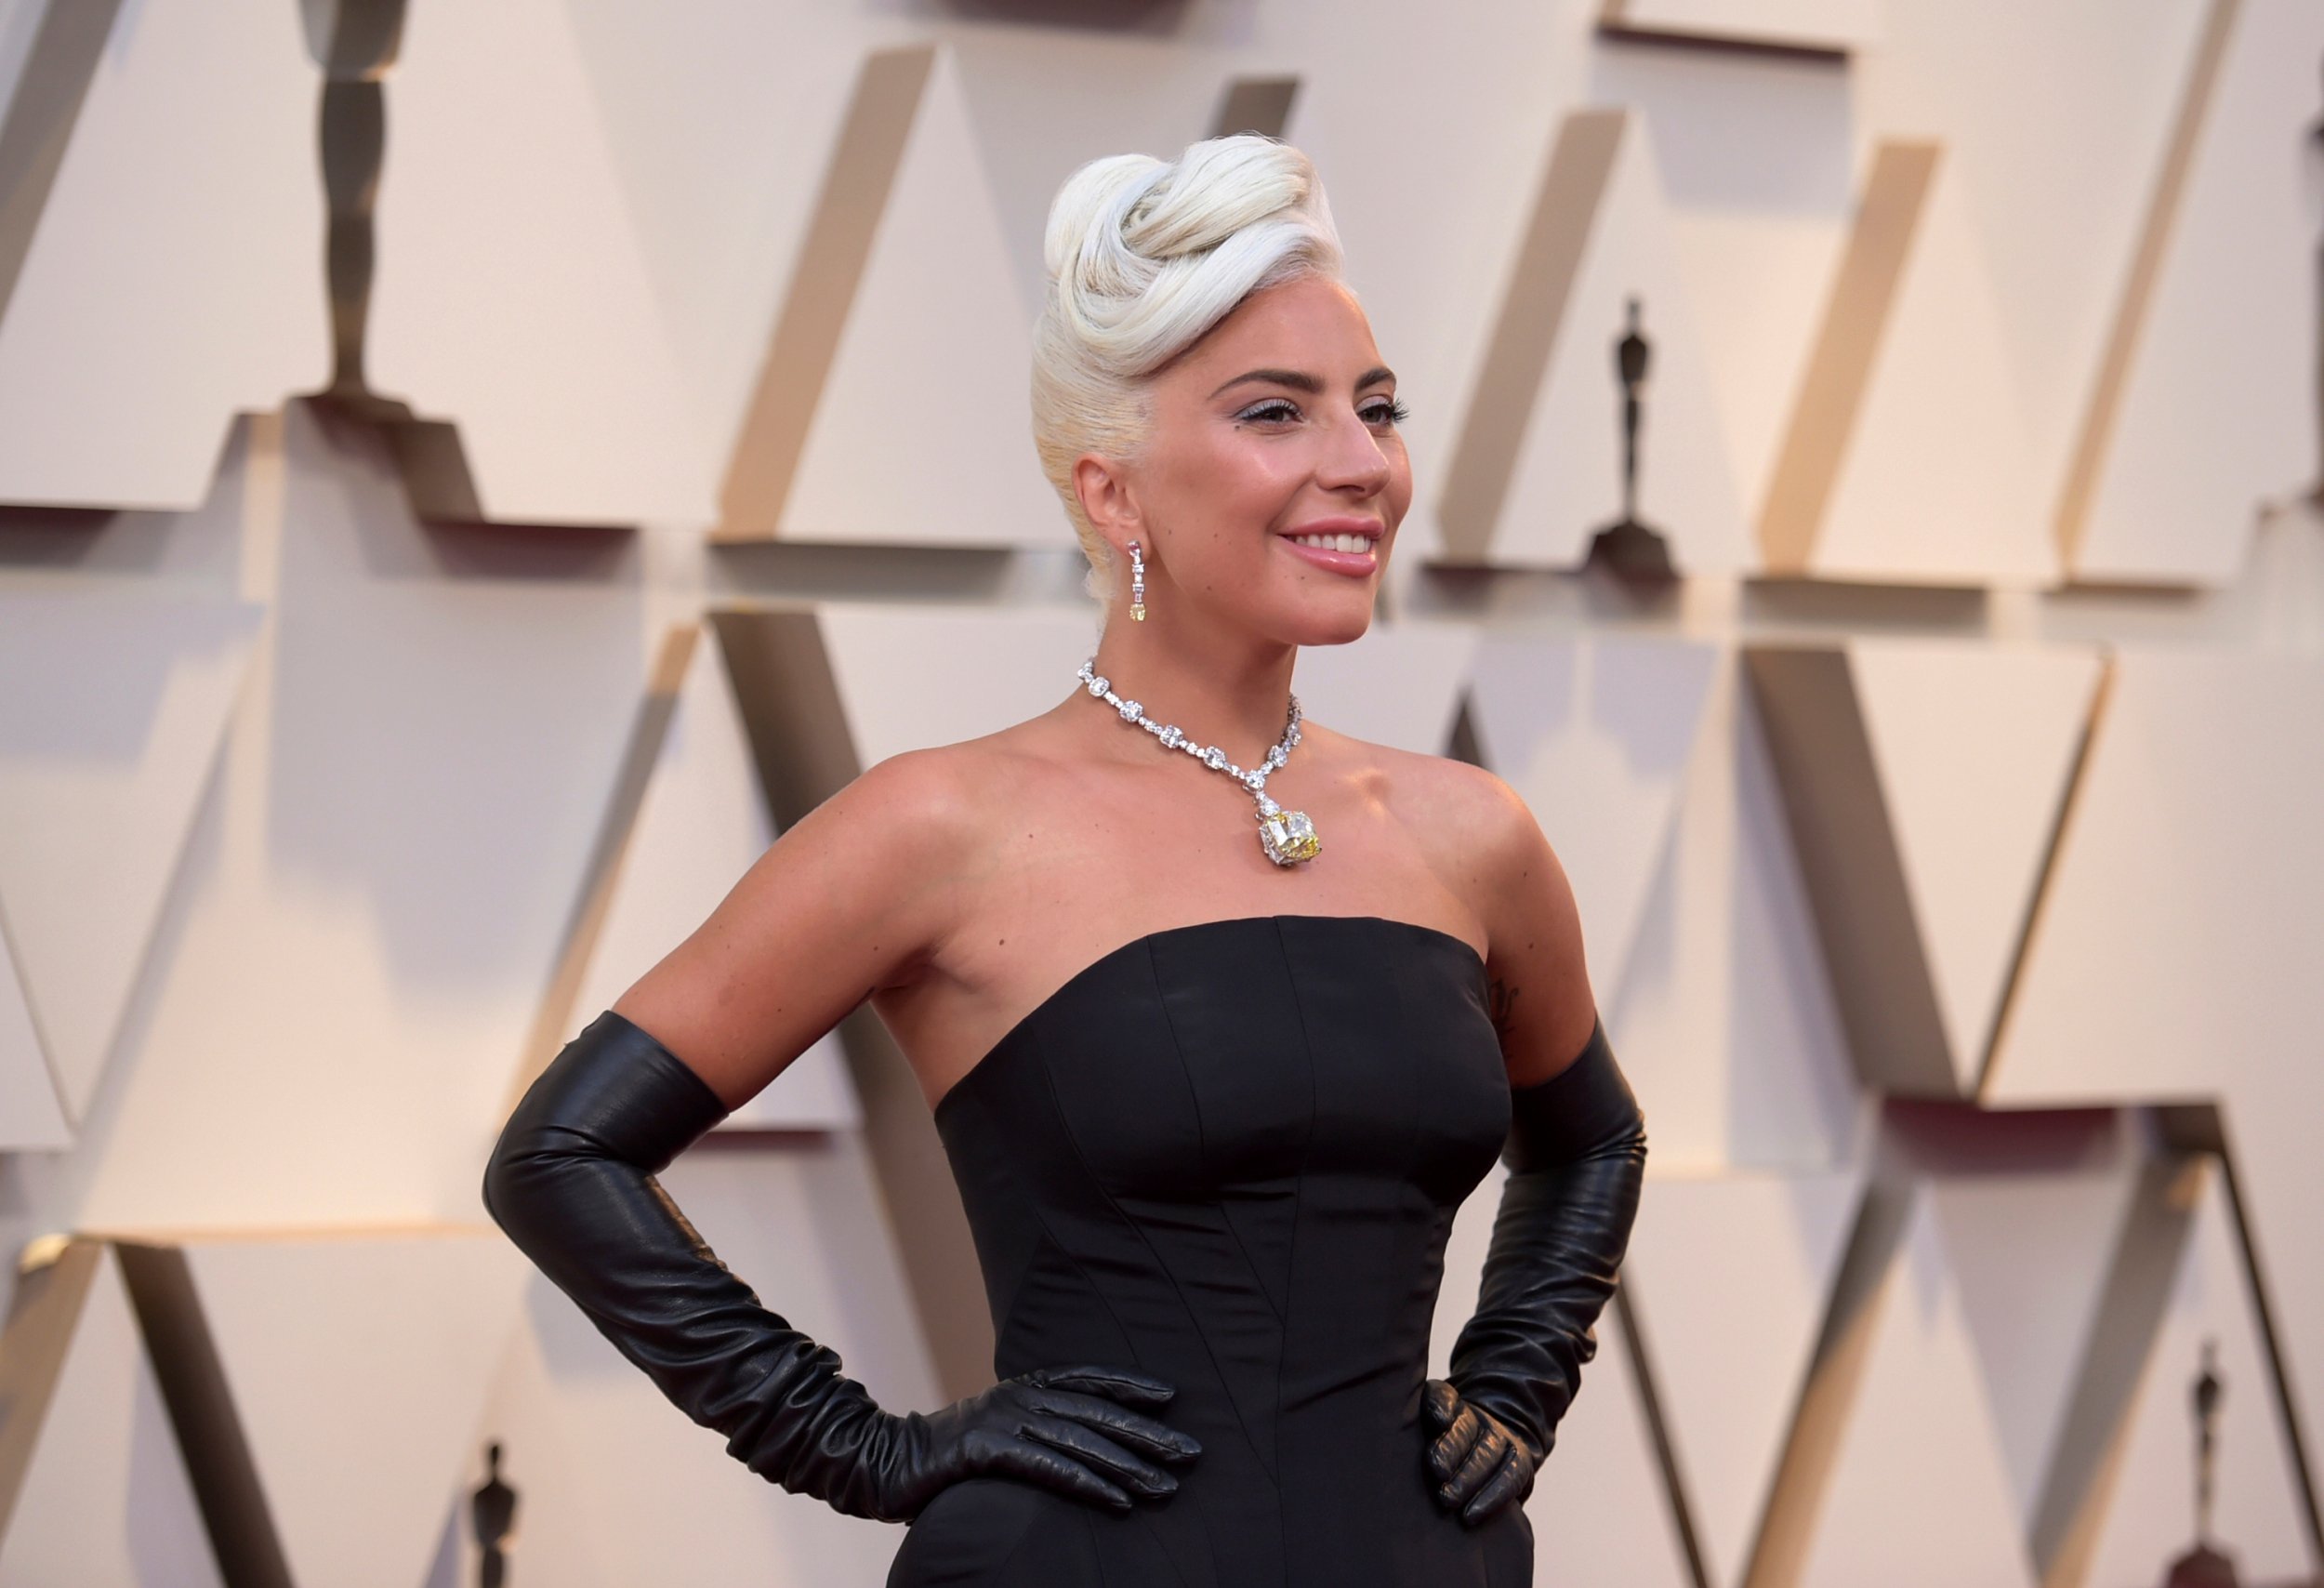 ¿Cuánto cuesta el collar que lució Lady Gaga en los Oscars 2019?